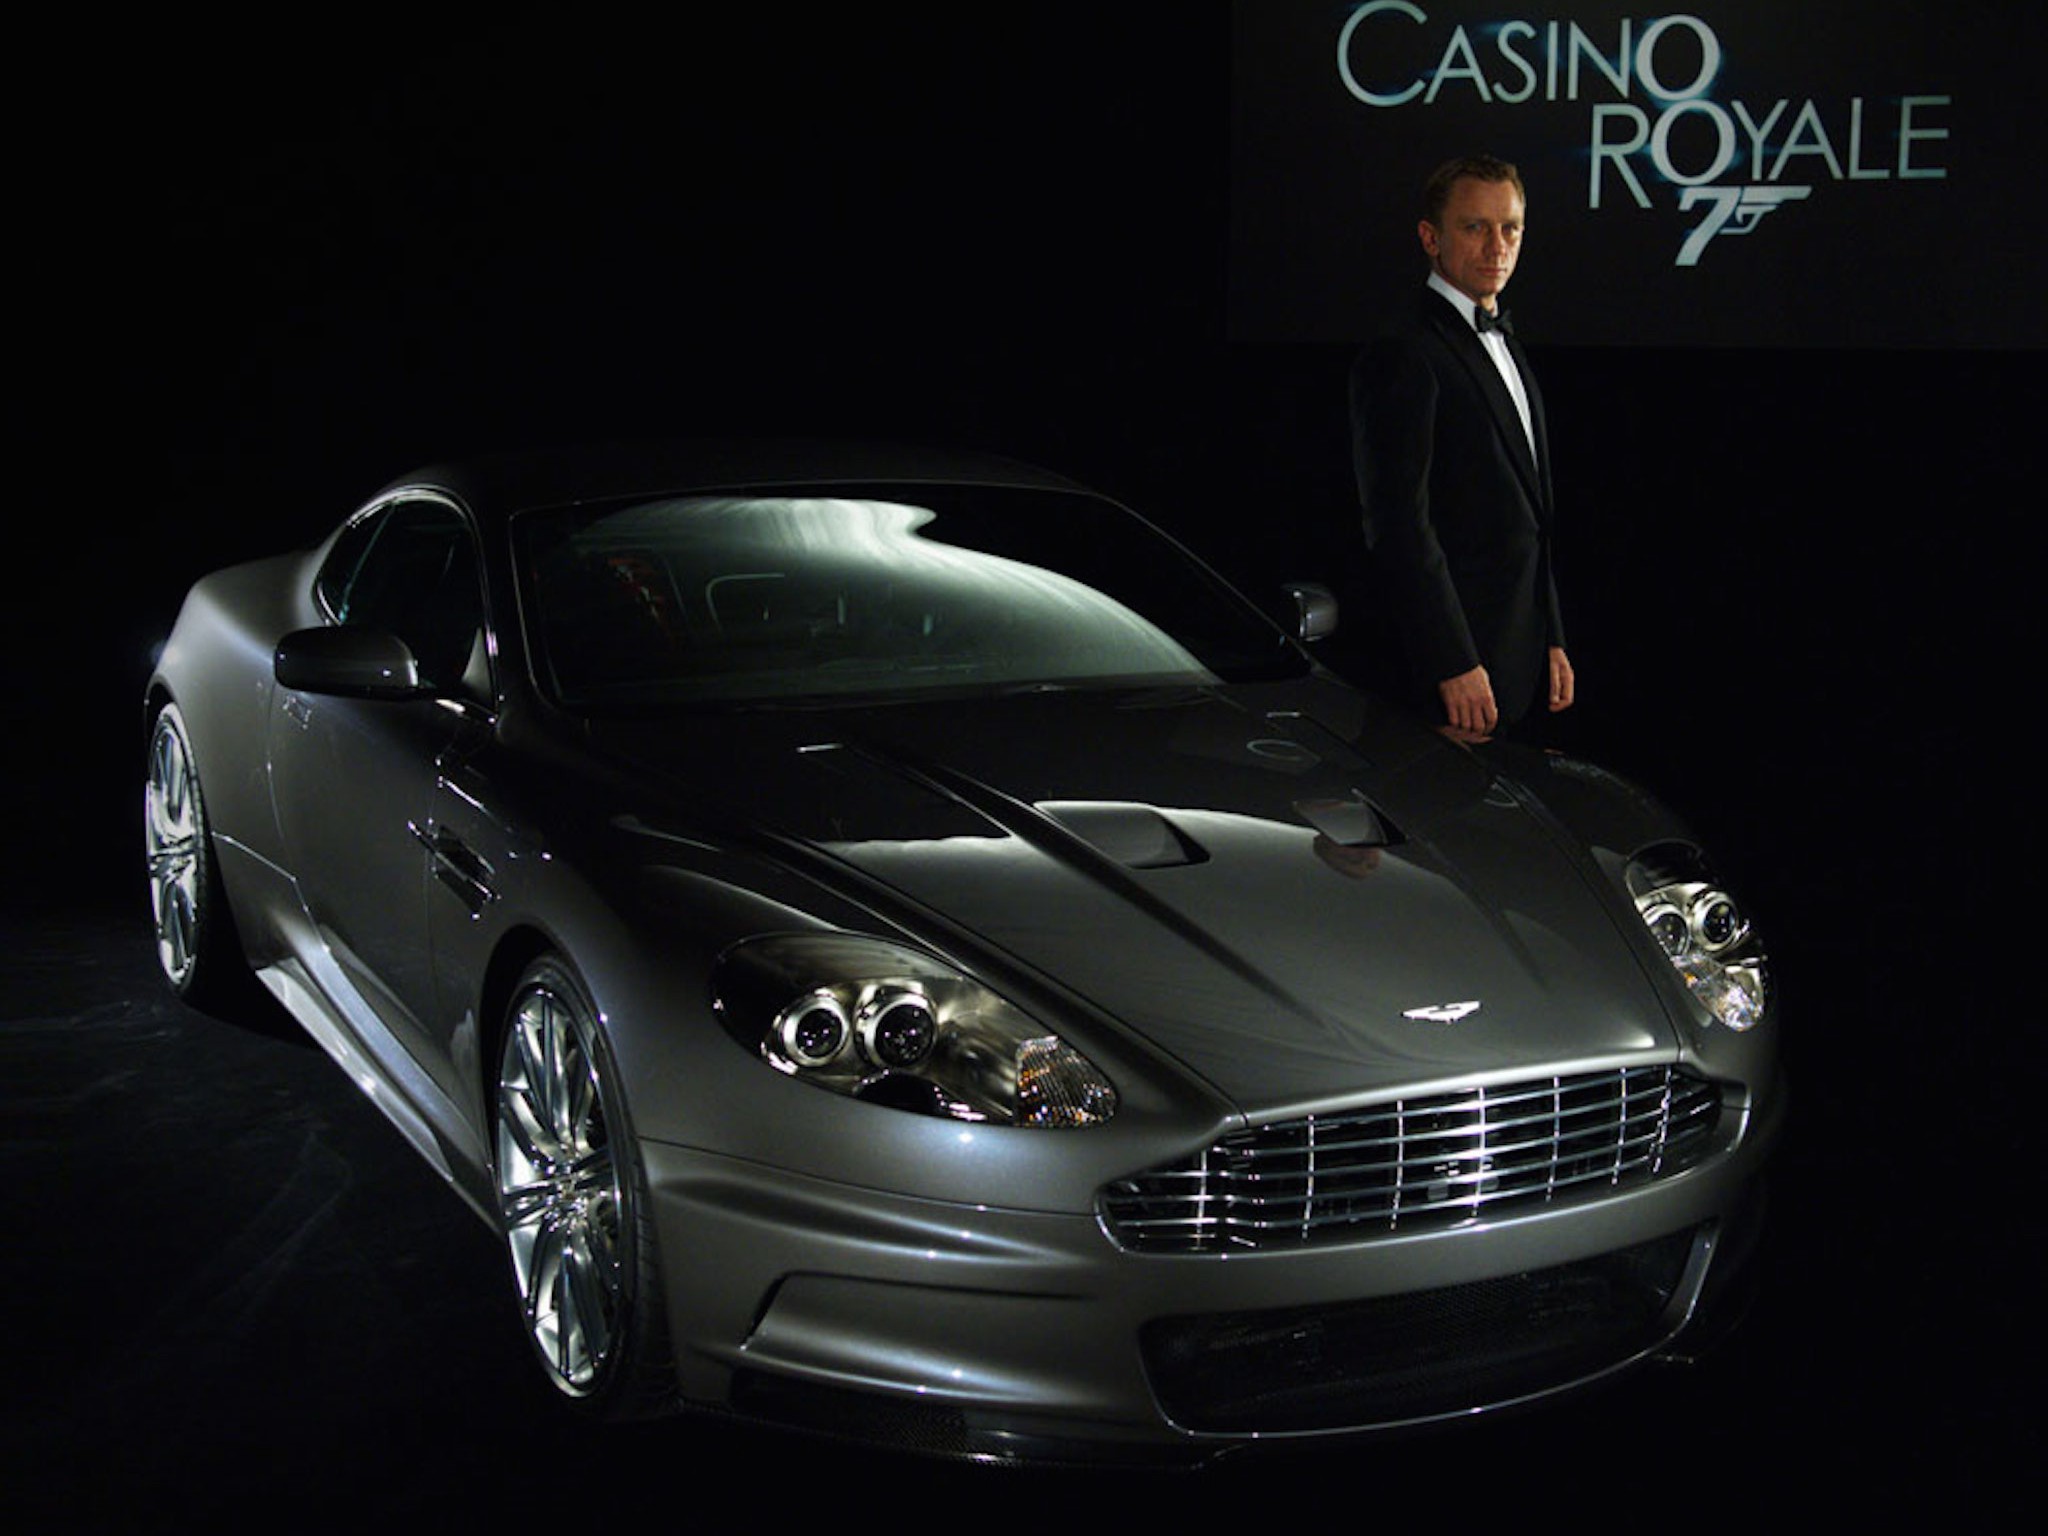 fondo de pantalla de casino royale,vehículo terrestre,vehículo,coche,coche deportivo,aston martin dbs v12